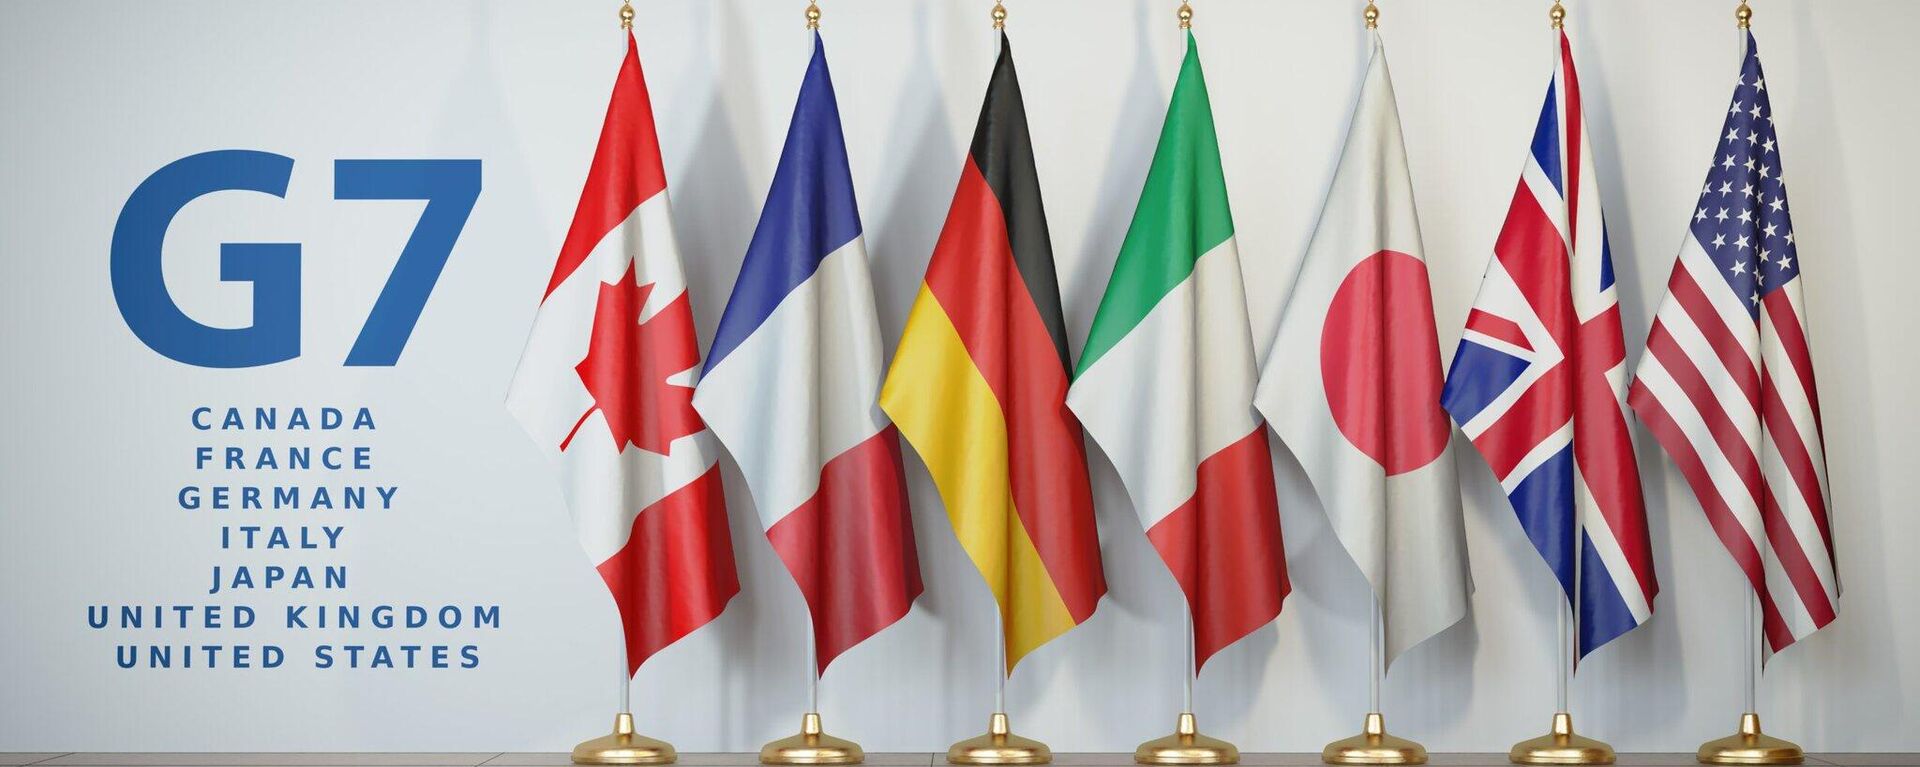 Bandeiras dos Estados-membros do G7, foto publicada em 6 de maio de 2022 - Sputnik Brasil, 1920, 29.06.2022